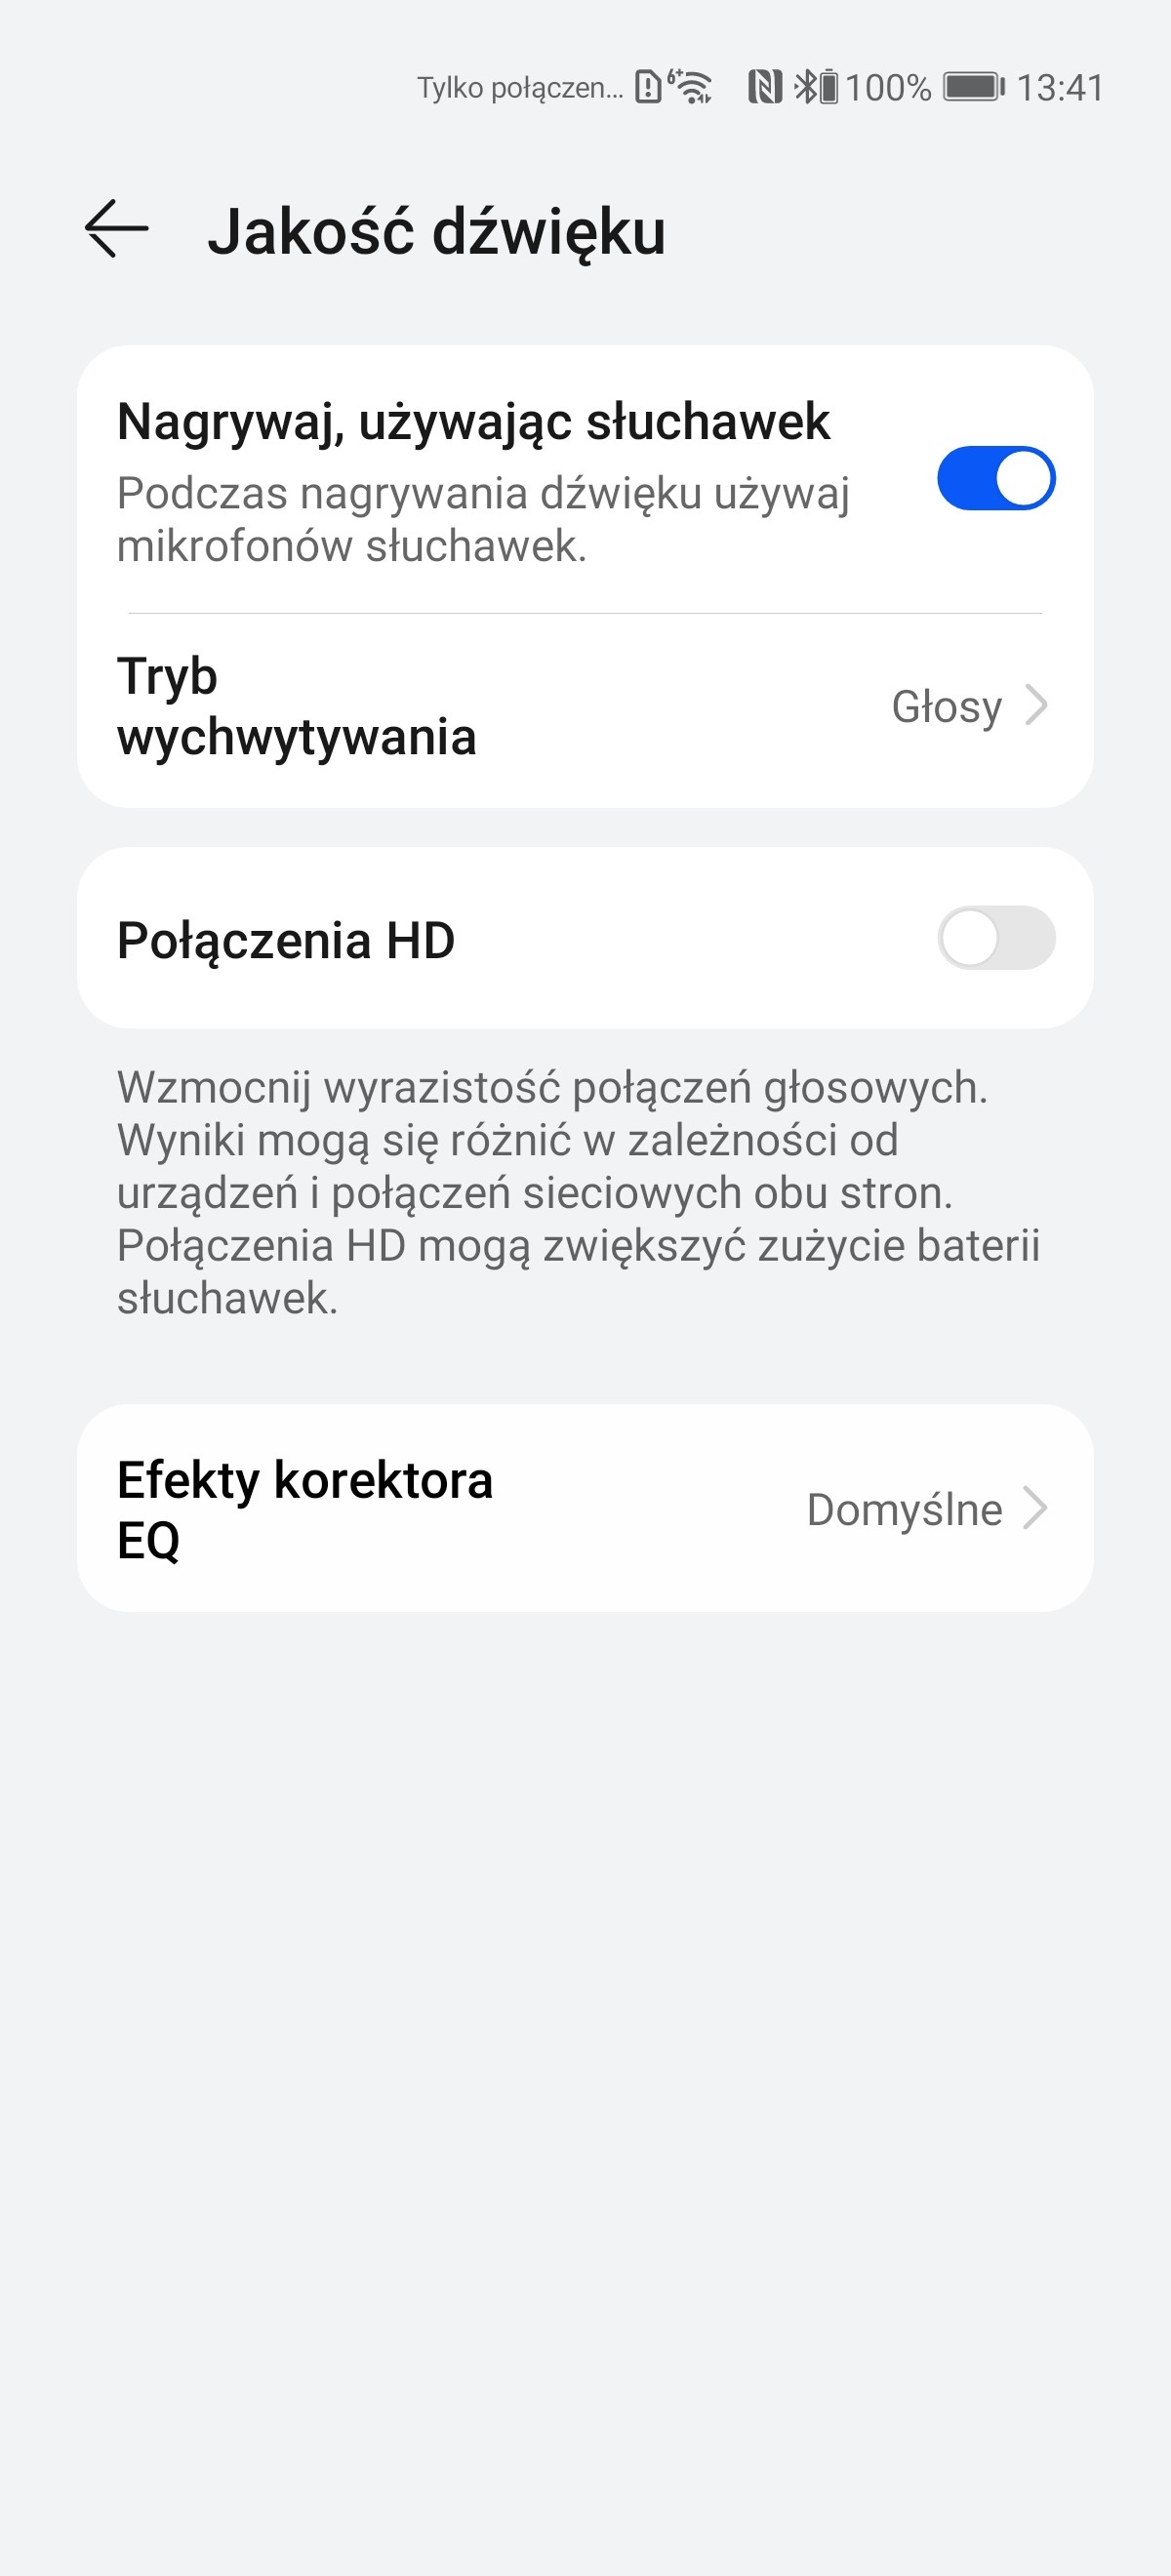 Recenzja Huawei Freebuds 4 - Aplikacja AI Life - fot. Tabletowo.pl